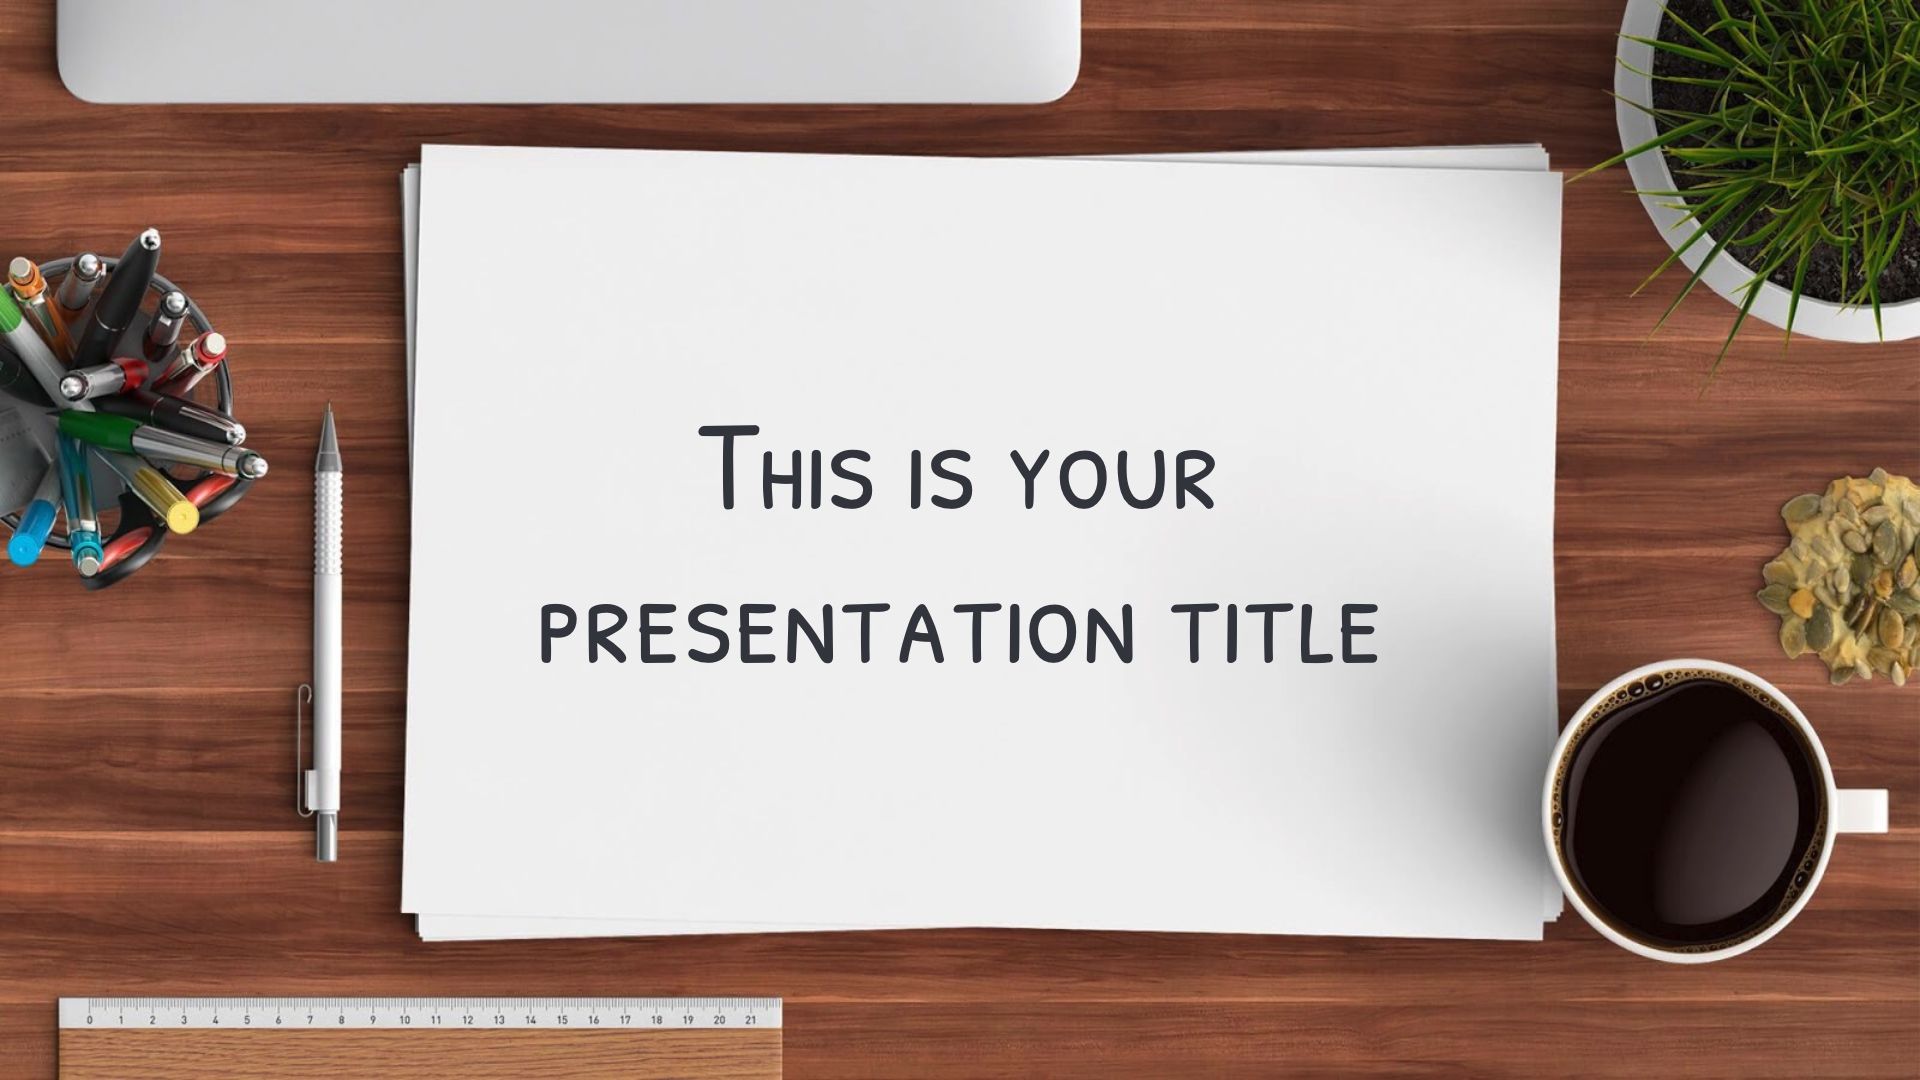 Nếu bạn đang cần một mẫu PowerPoint miễn phí độc đáo, hãy đến với chúng tôi! Chúng tôi cung cấp những mẫu PowerPoint đẹp mắt, chuyên nghiệp và miễn phí để giúp bạn tạo ra những bài thuyết trình ấn tượng.